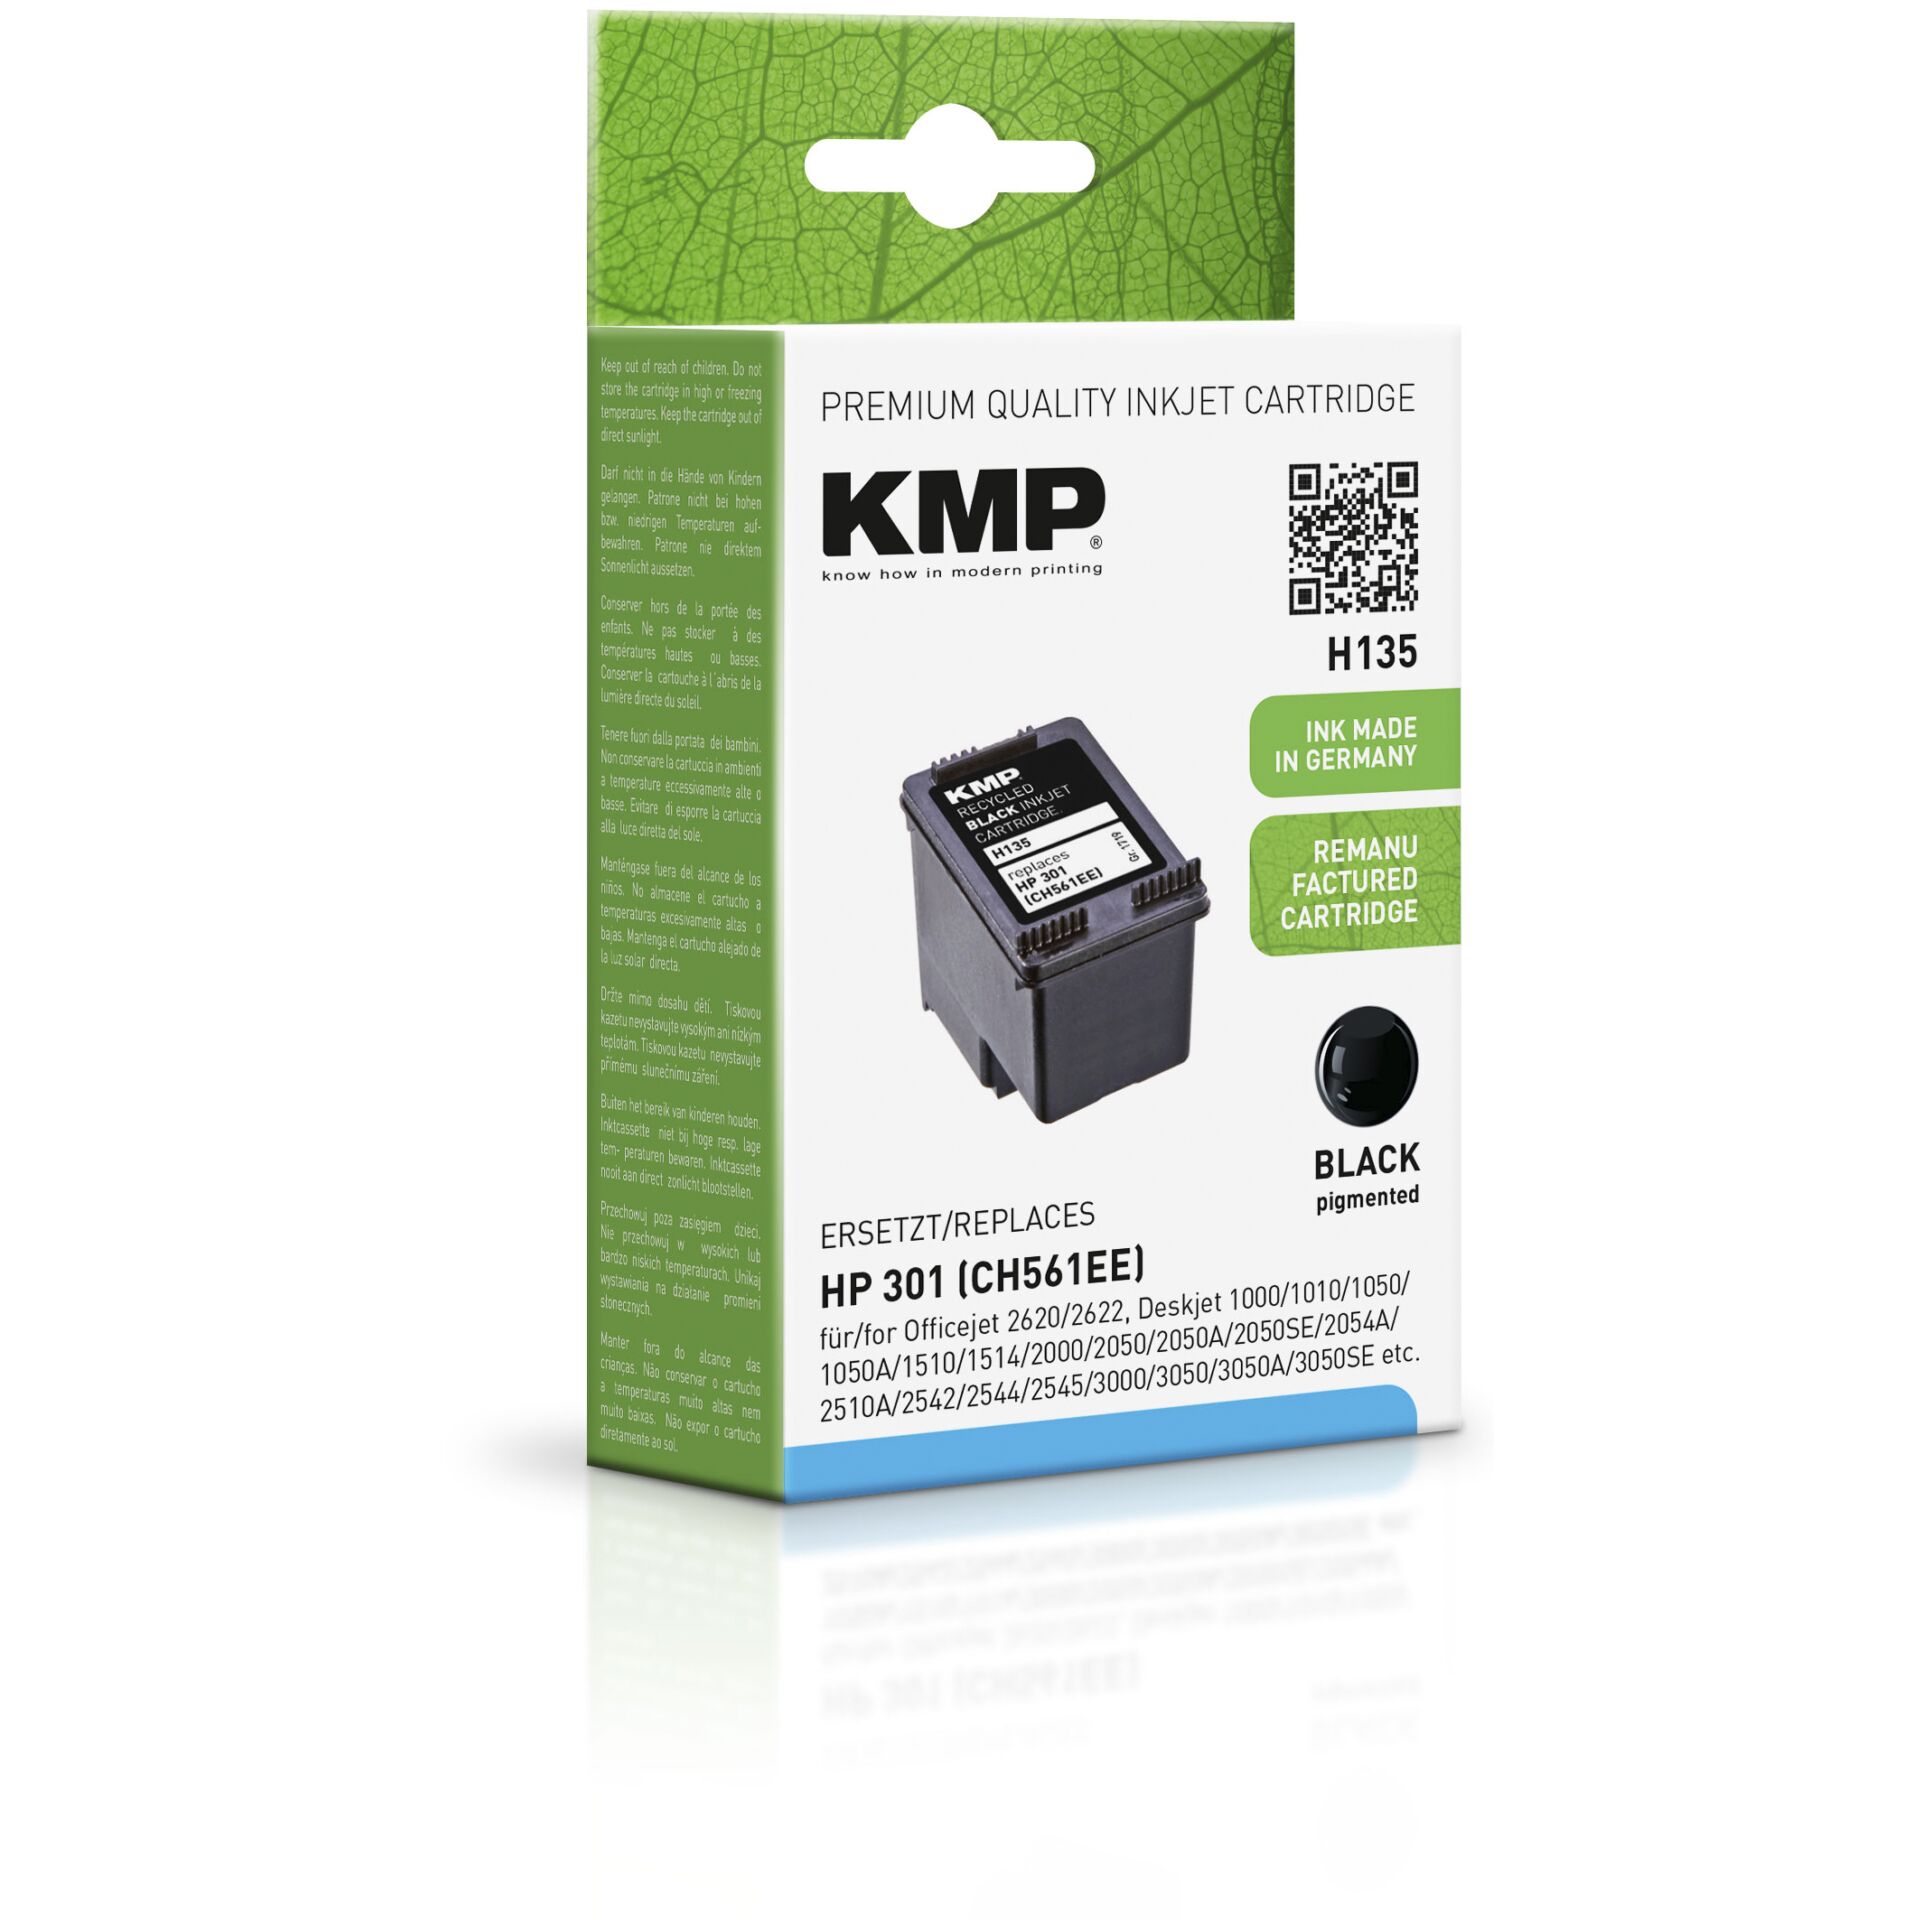 Kmp Printtechnik Ag -KMP Patrone HP CH561EE NR.301 black 190 S. H135  refilled -Kmp Printtechnik Ag Hardware/Electronic